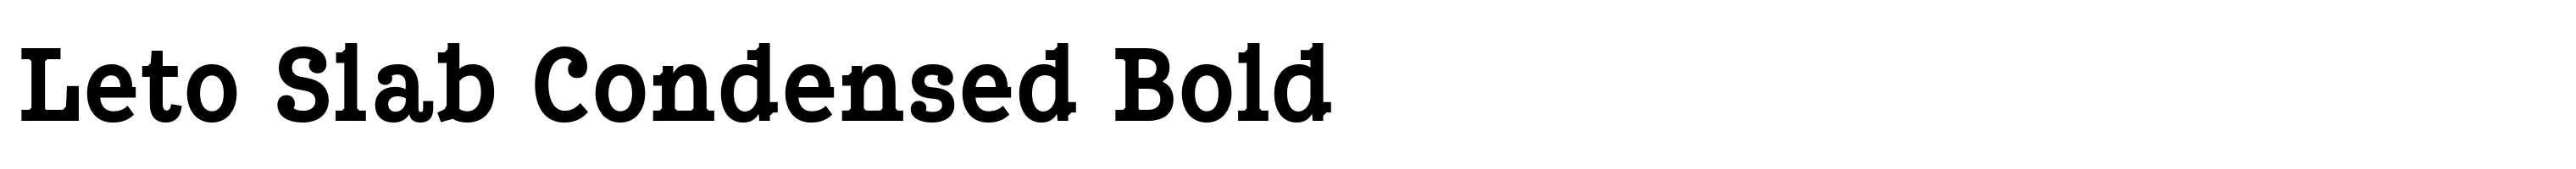 Leto Slab Condensed Bold